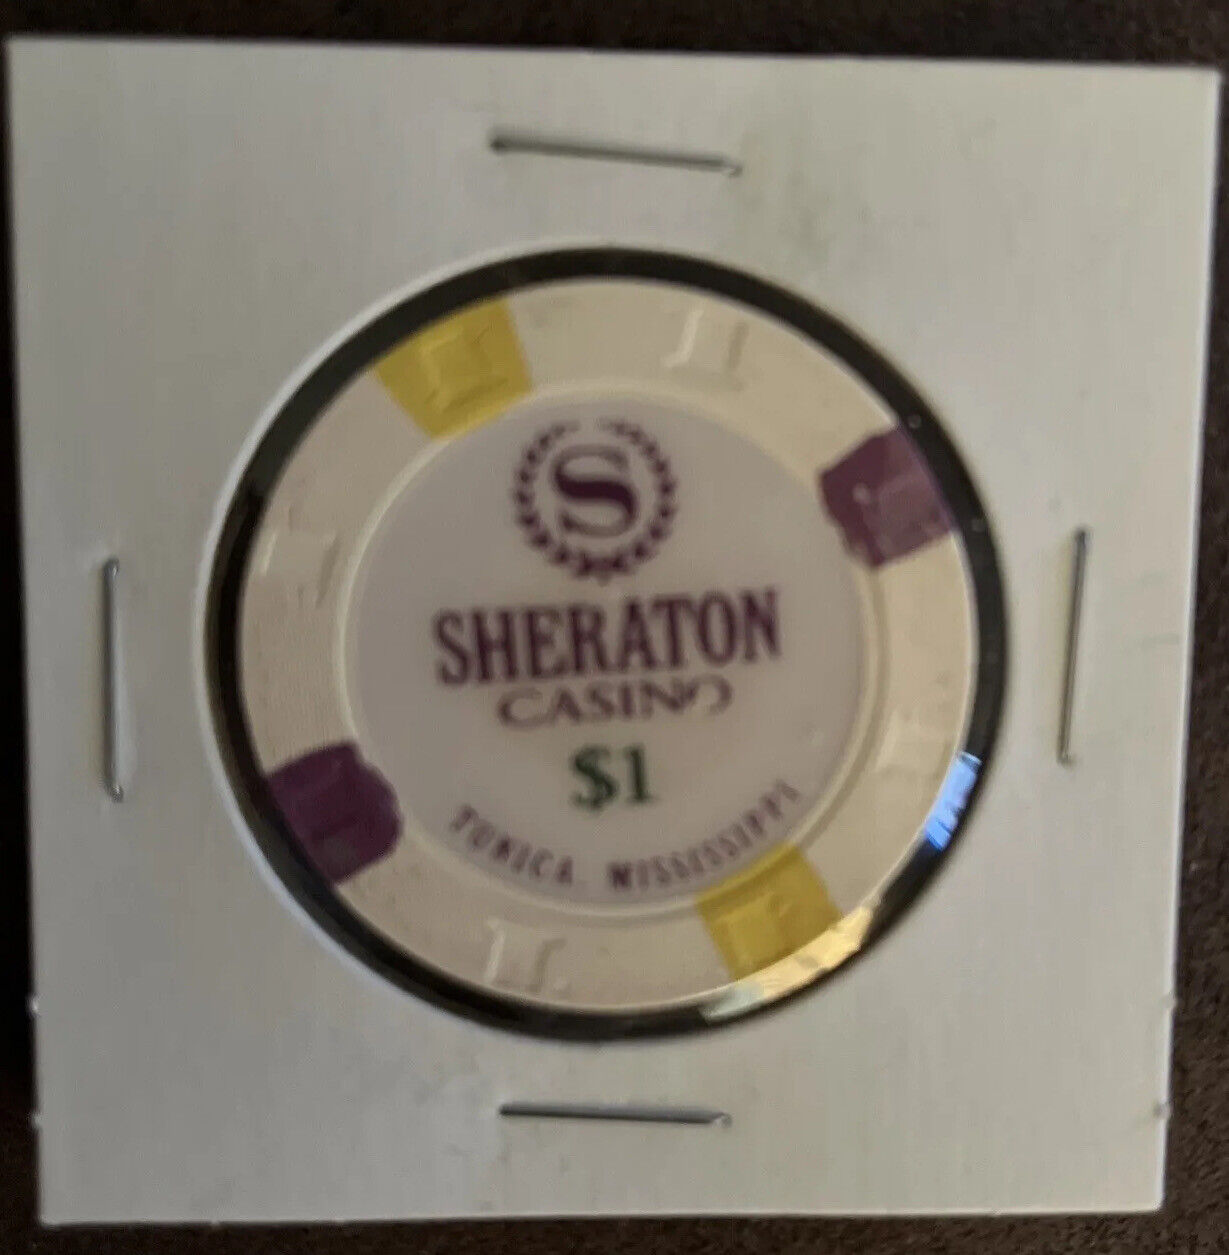 $1 Sheraton Casino Chip - Tunica, Mississippi